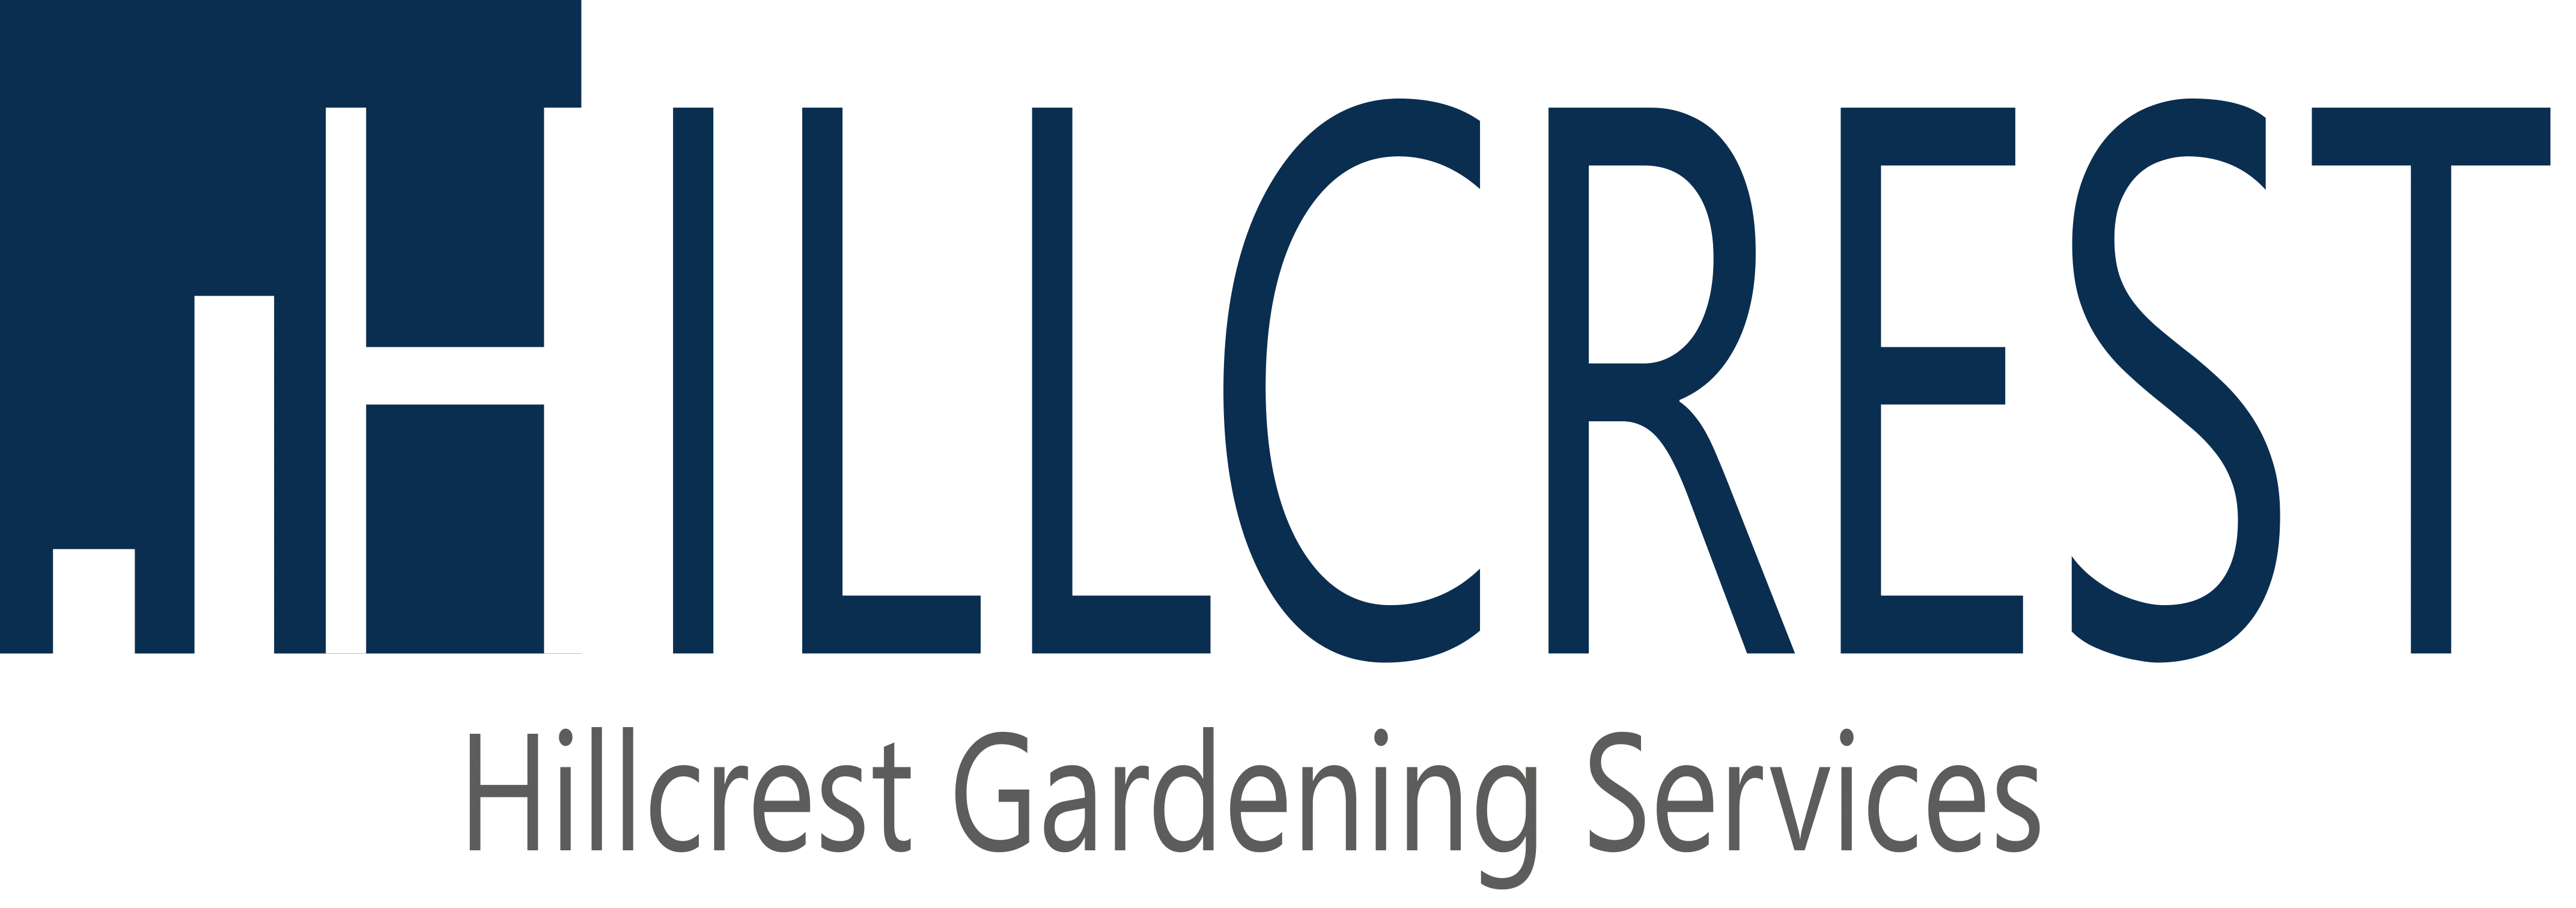 Hillcrest Gardening Services-1